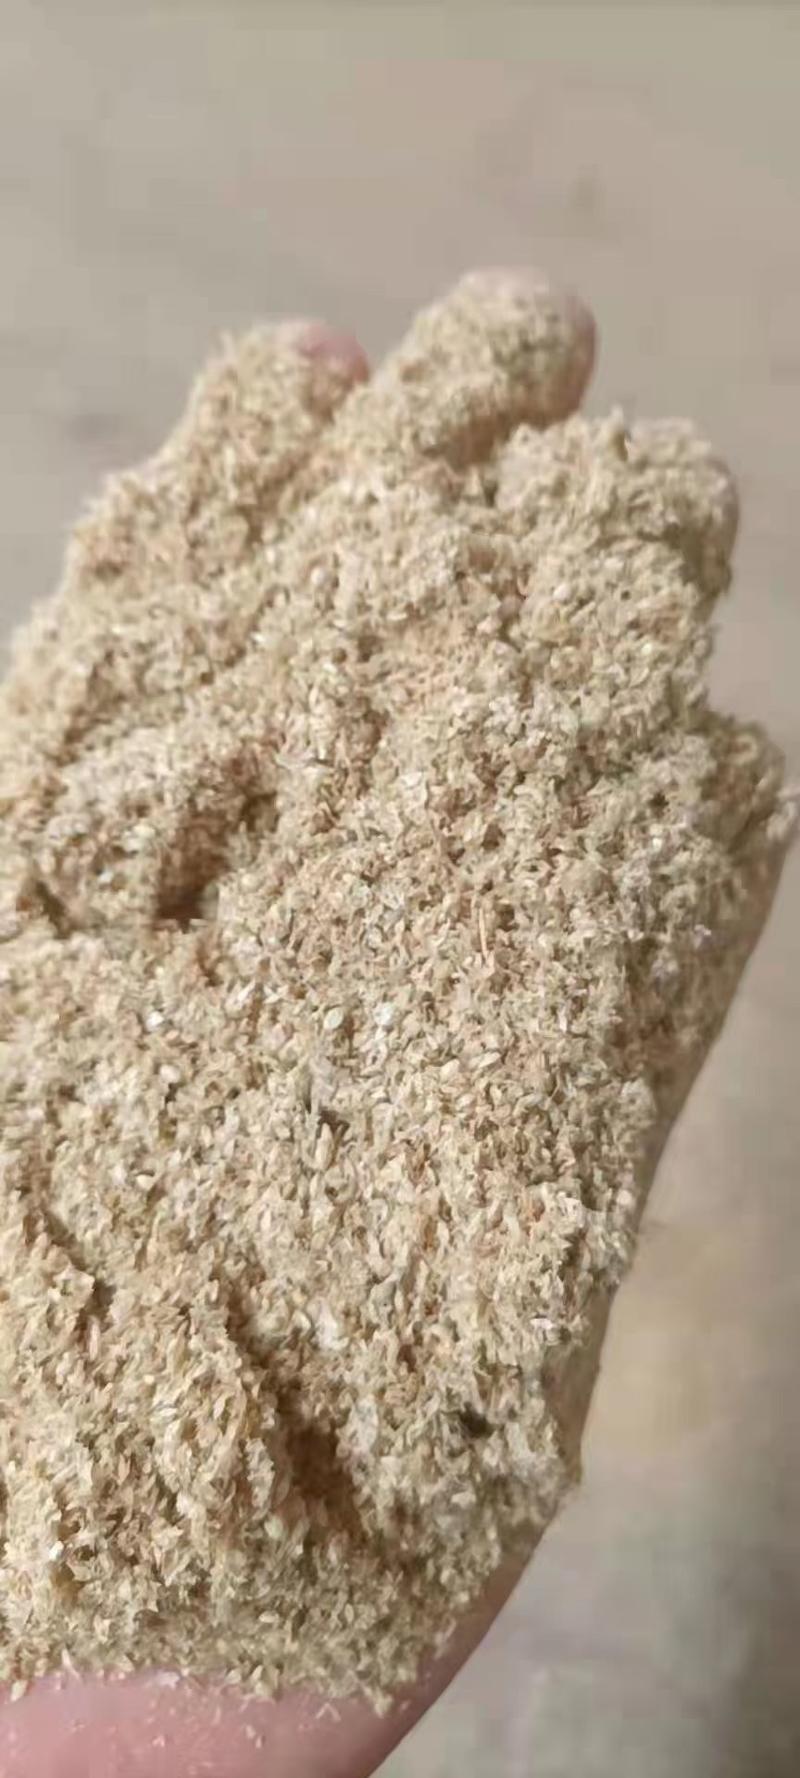 米糠二三道小米混合油糠产品干净无杂质性价比高欢迎来电